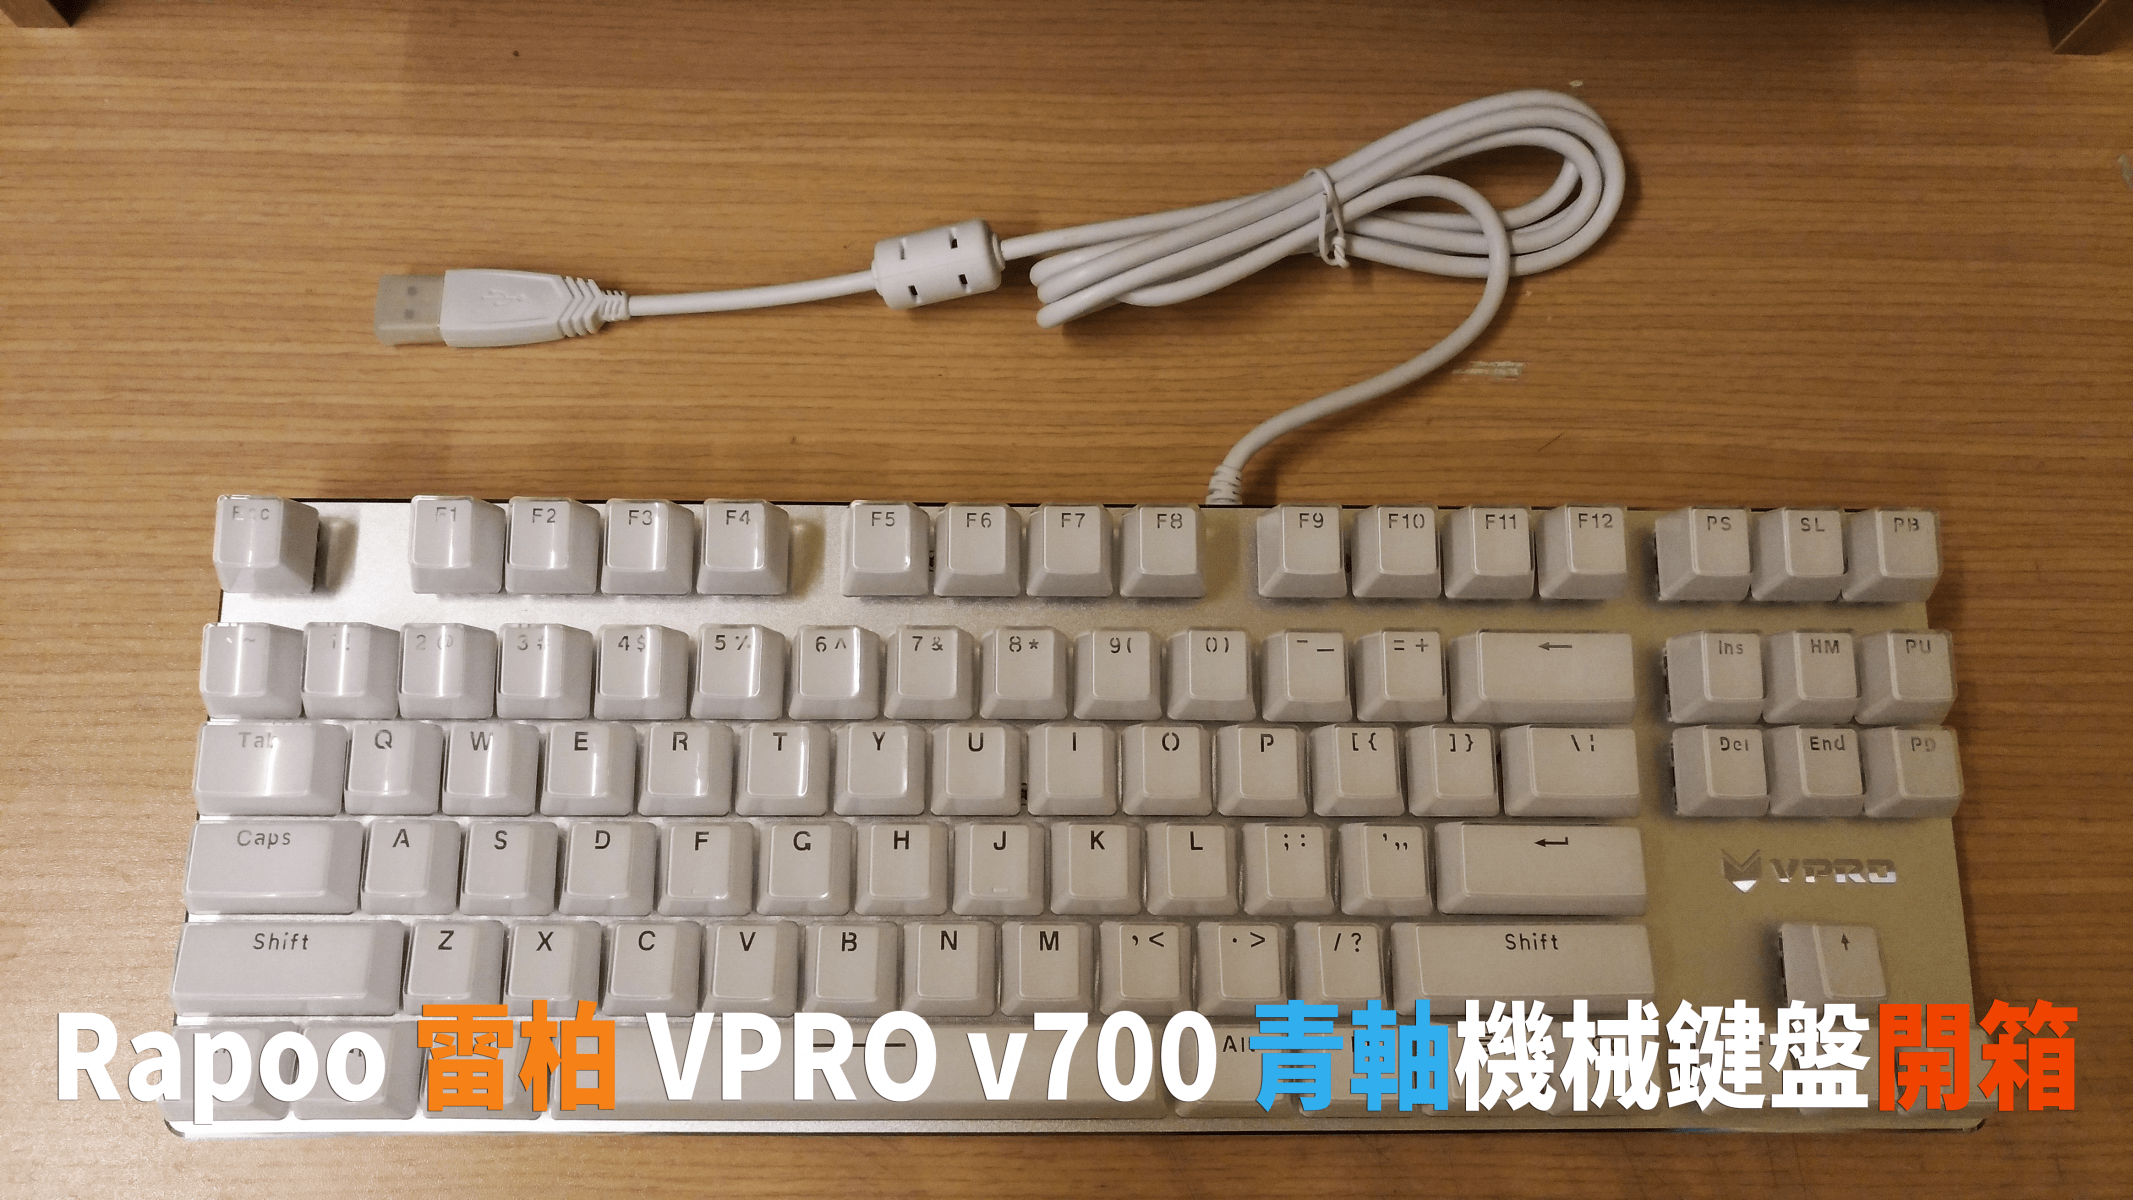 P 20171206 164314 - [開箱] 雷柏 VPRO v500s 冰晶版青軸機械式鍵盤，親民的入門好選擇！